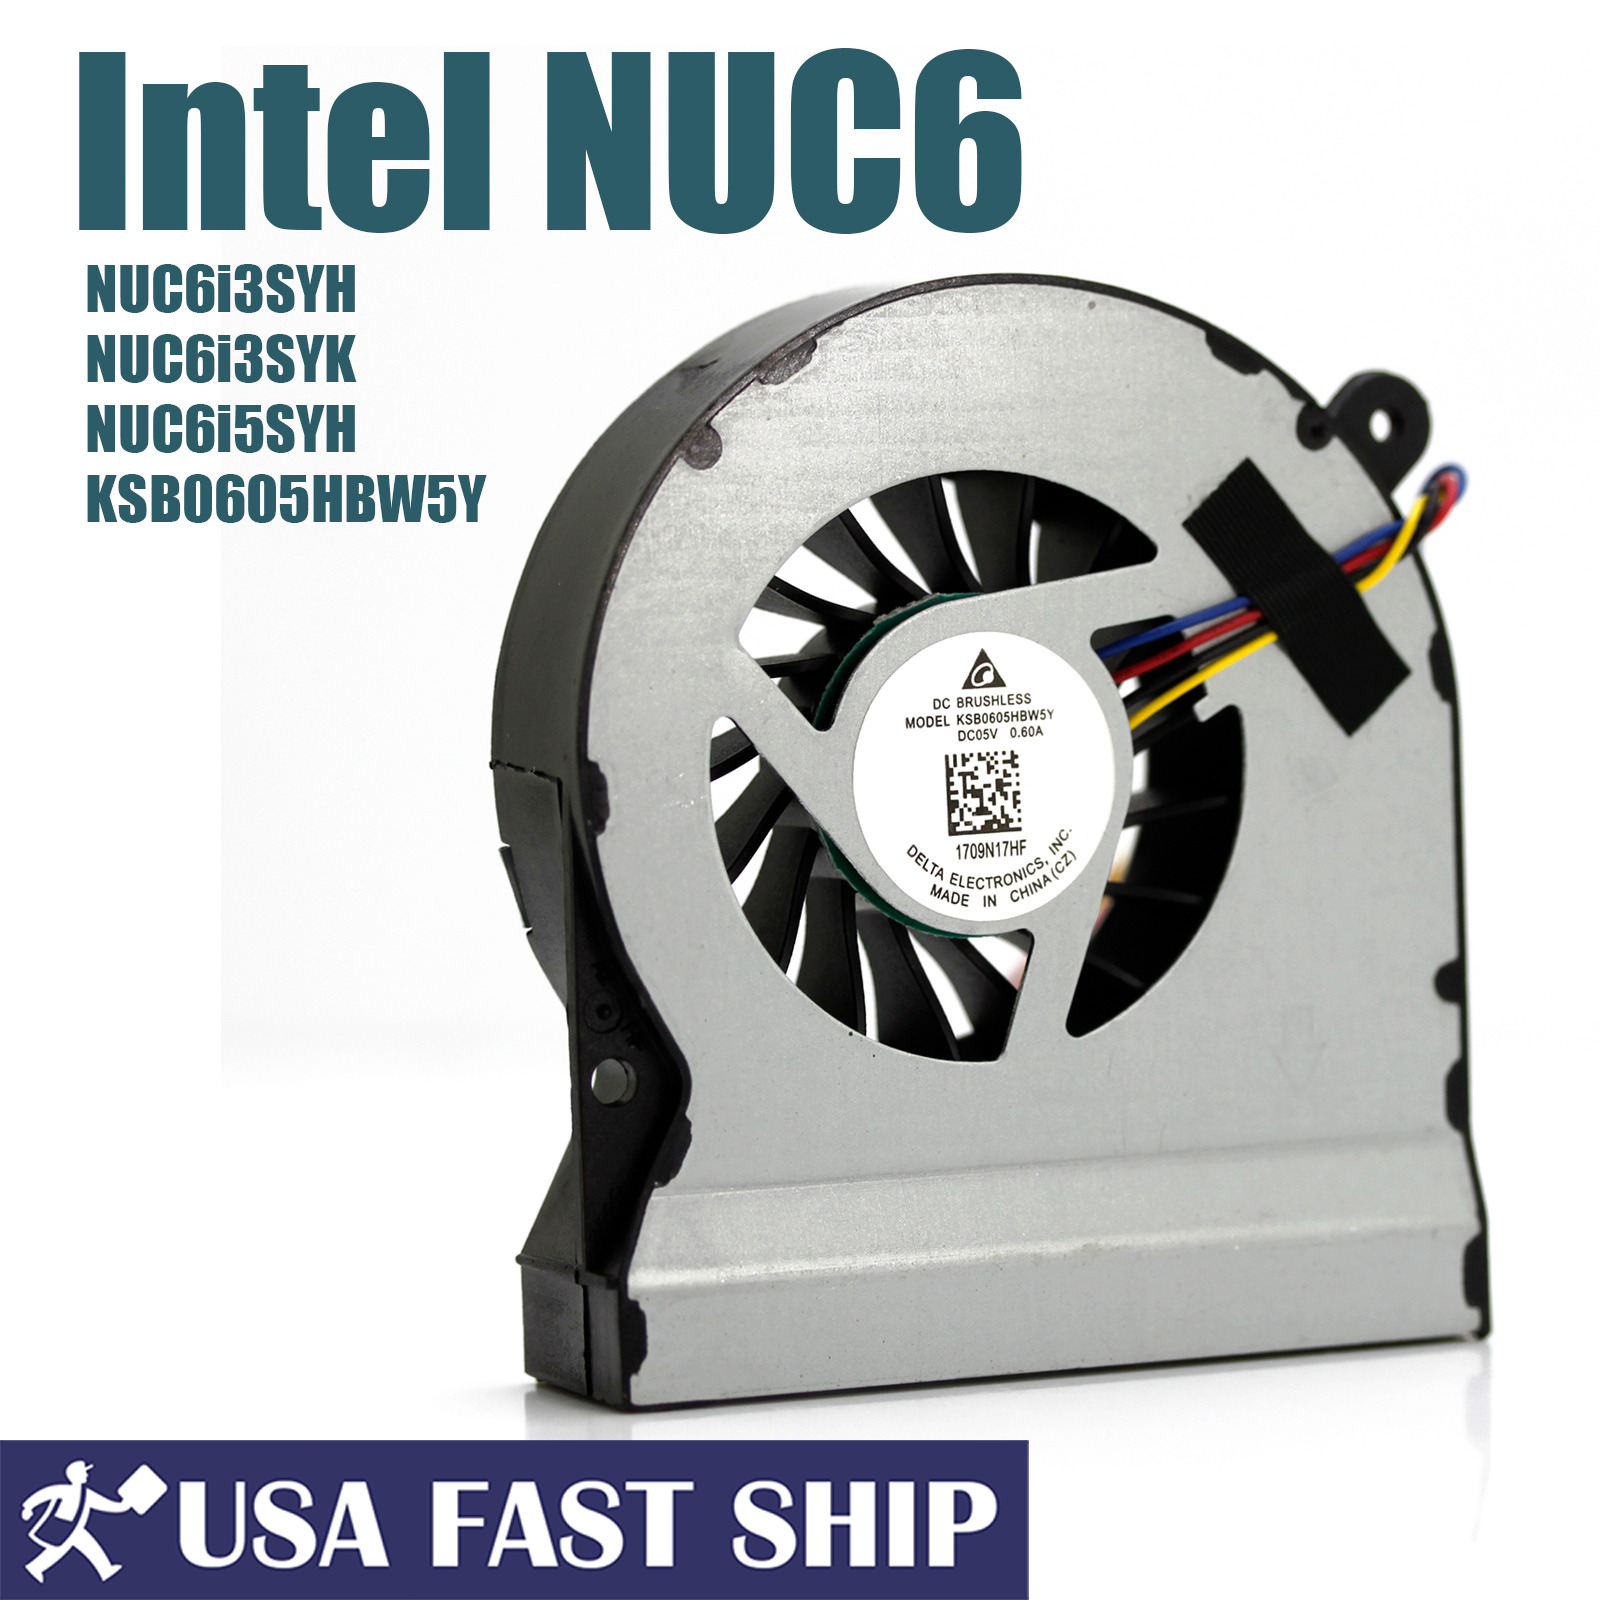 New CPU Cooling Fan For Intel NUC6 NUC6i3SYH NUC6i3SYK NUC6i5SYH KSB0605HBW5Y